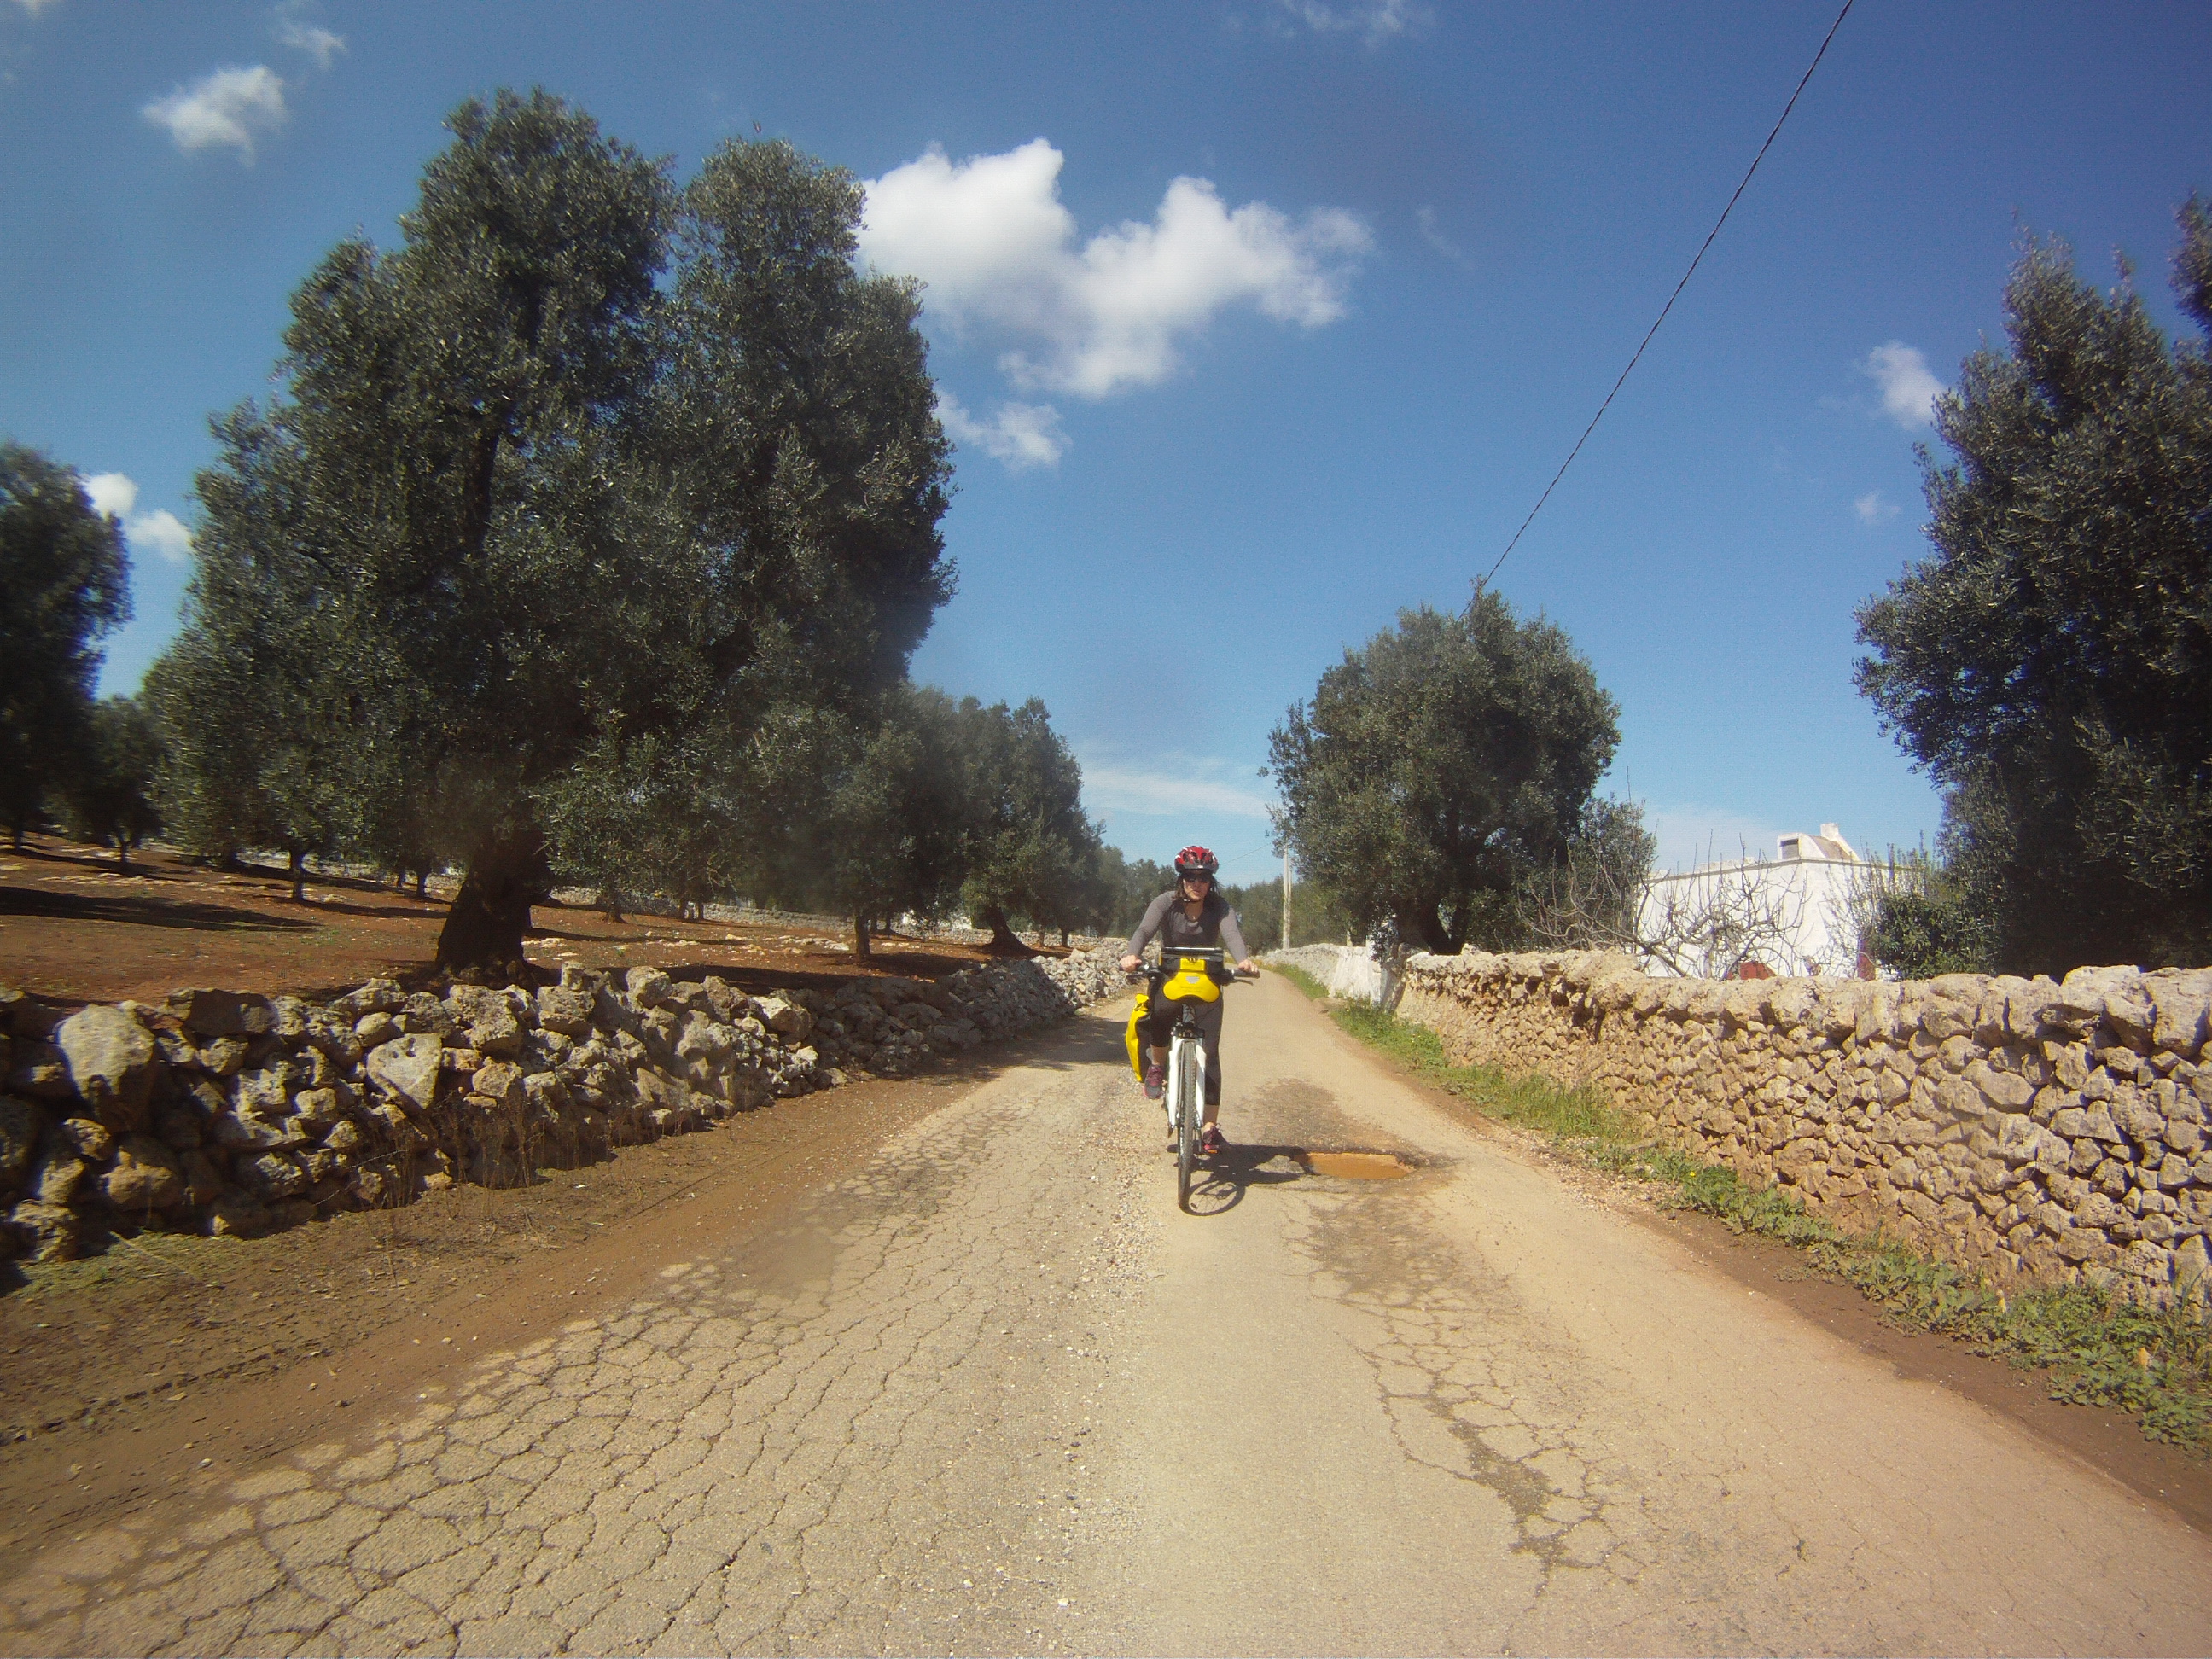 Cyclomundo rider on a quiet Apulian road